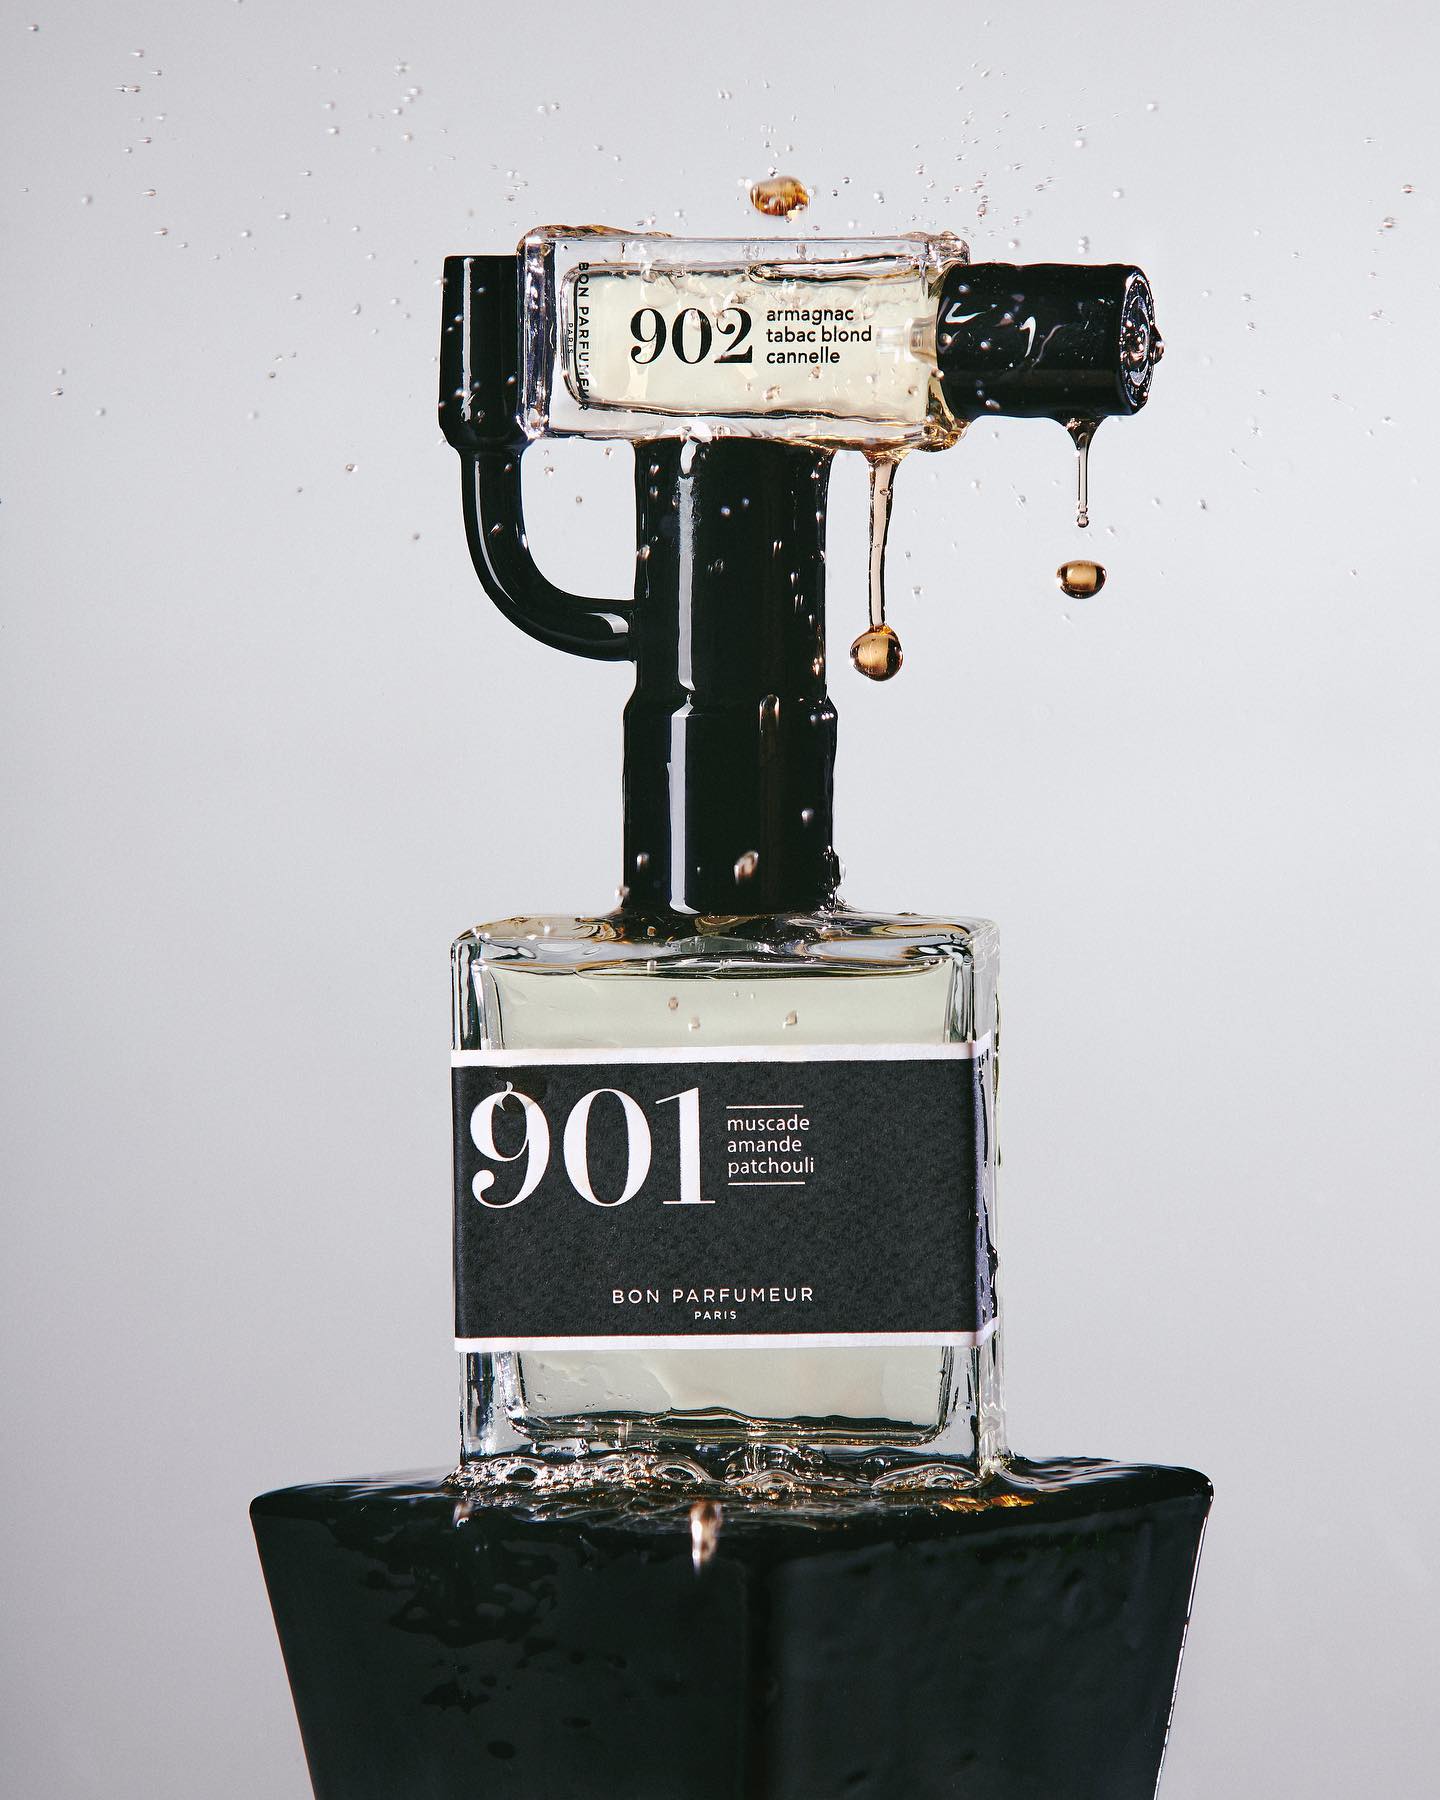 Bon Parfumeur - 901 noix de muscade amande patchouli 100ML